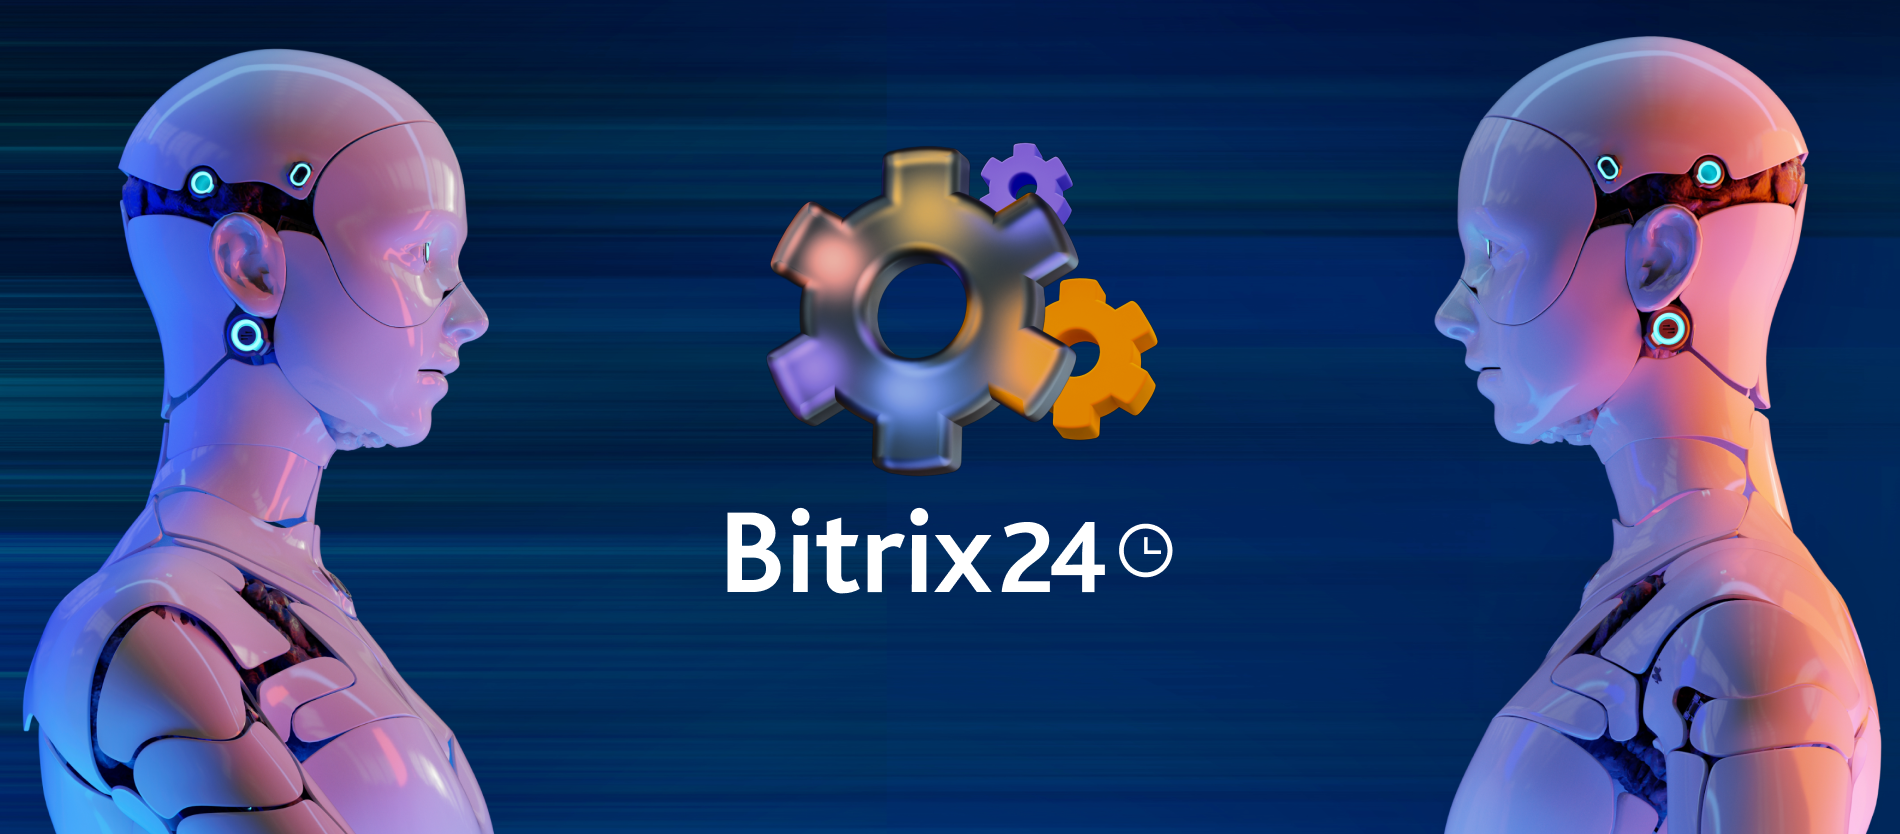 Reguły automatyzacji w Bitrix24: Informacje o klientach i powiadomienia dla pracowników